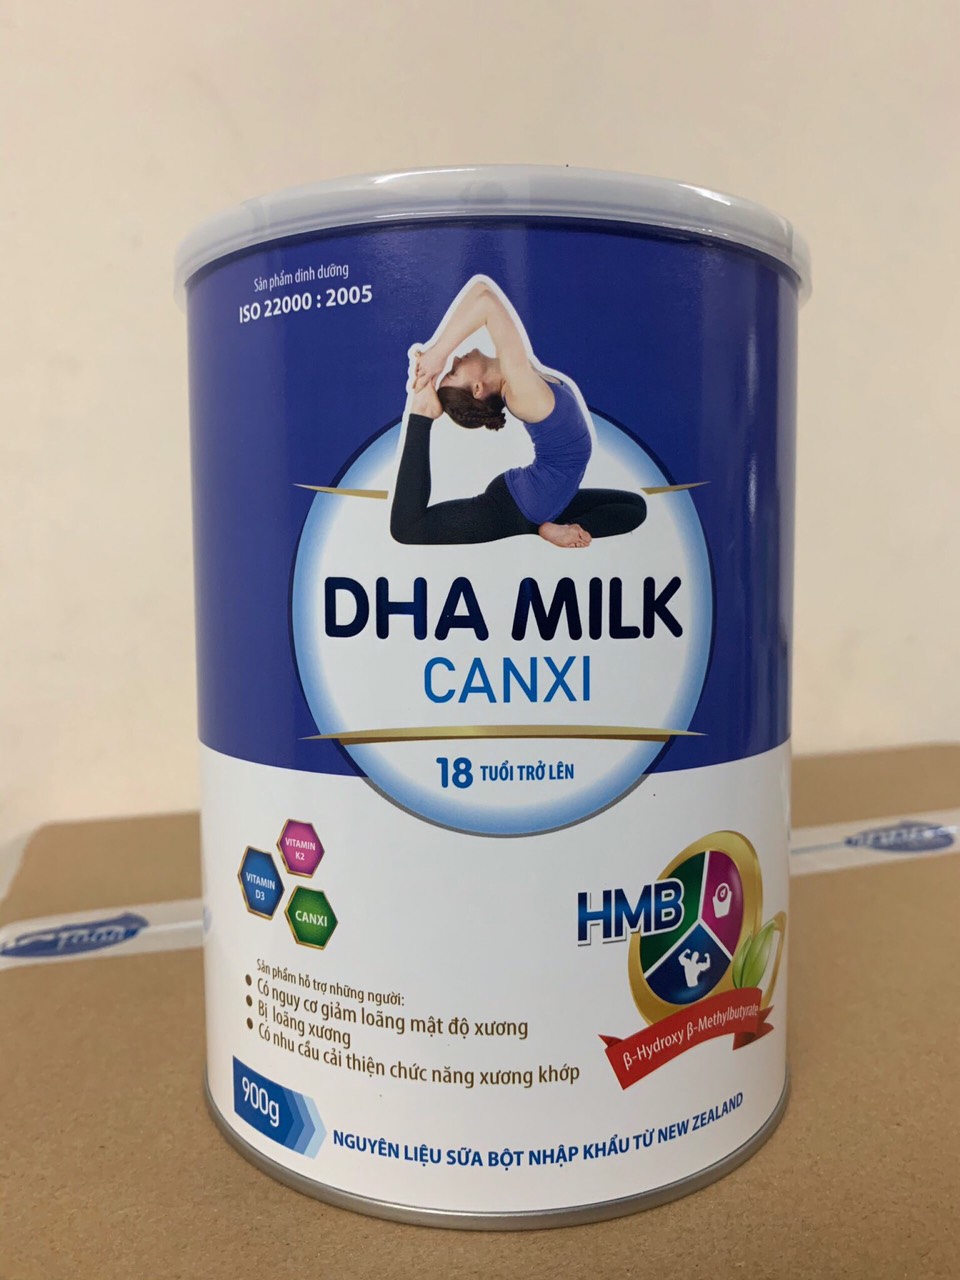 Sữa DHA MILK CANXI Dành cho người 18 tuổi trở lên